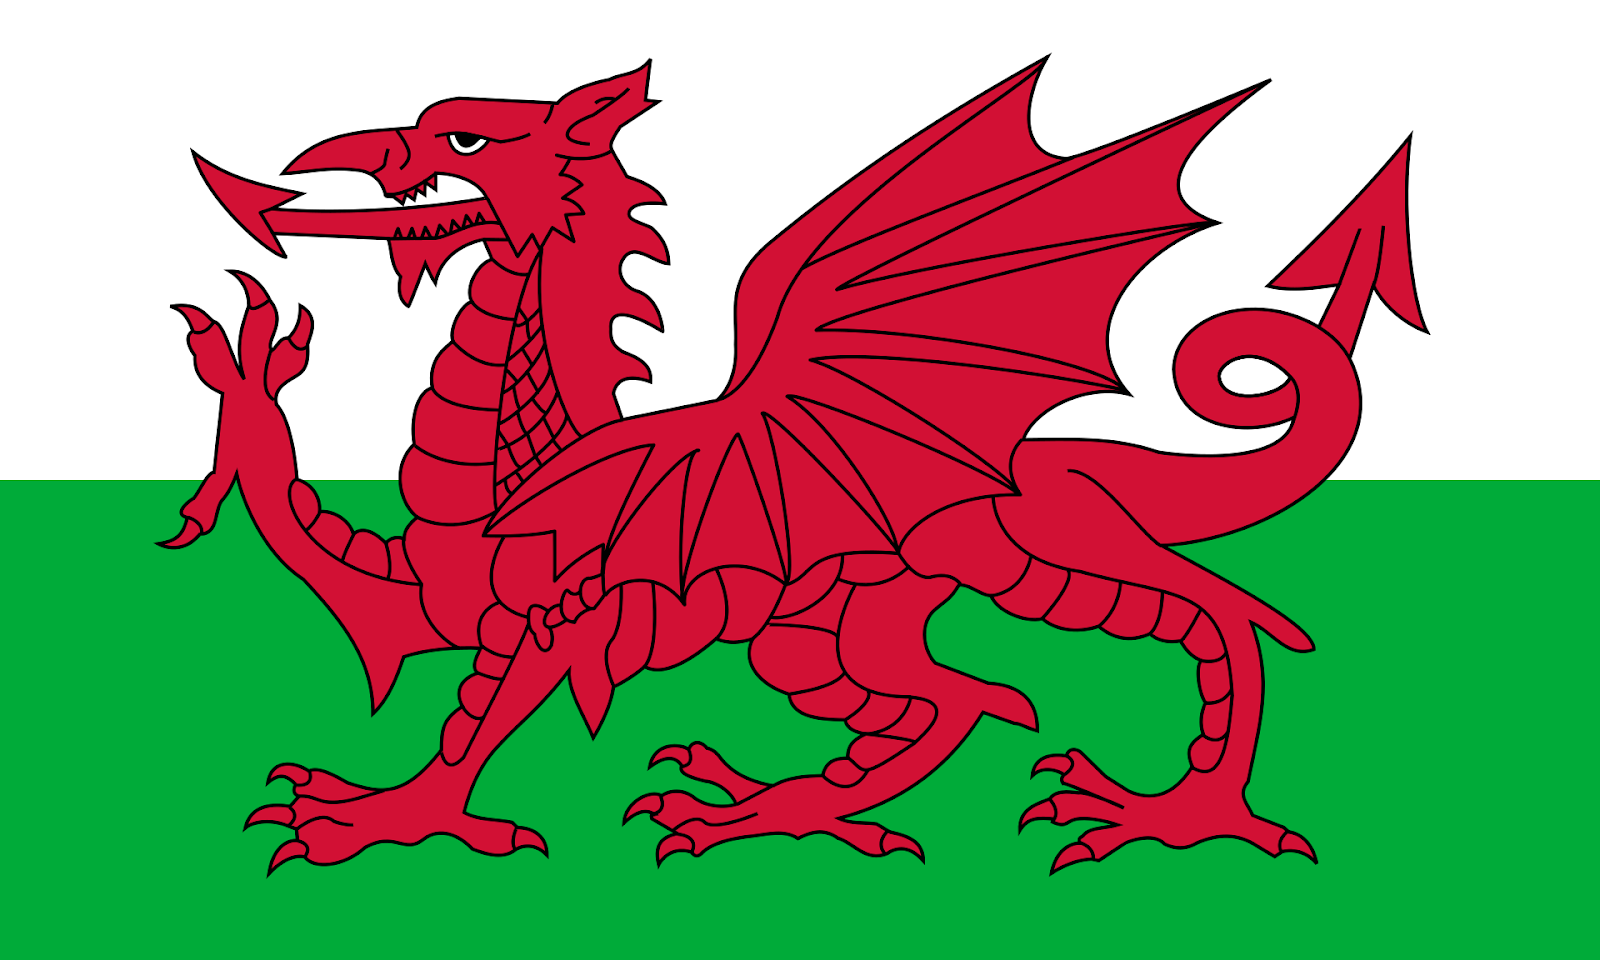 Tỷ lệ chính xác quốc kỳ xứ Wales 2024: Điều đặc biệt về Quốc kỳ xứ Wales 2024 là chúng được thiết kế và phối hợp một cách chính xác và chân thực. Từng chi tiết trên cờ đều được sắp xếp đúng tỷ lệ và kích thước theo quy định chính thức. Trong khi xem các trận đấu, bạn sẽ cảm nhận được sự chính xác của Quốc kỳ xứ Wales và hoàn toàn có thể chinh phục thử thách đếm các sao trong cờ.